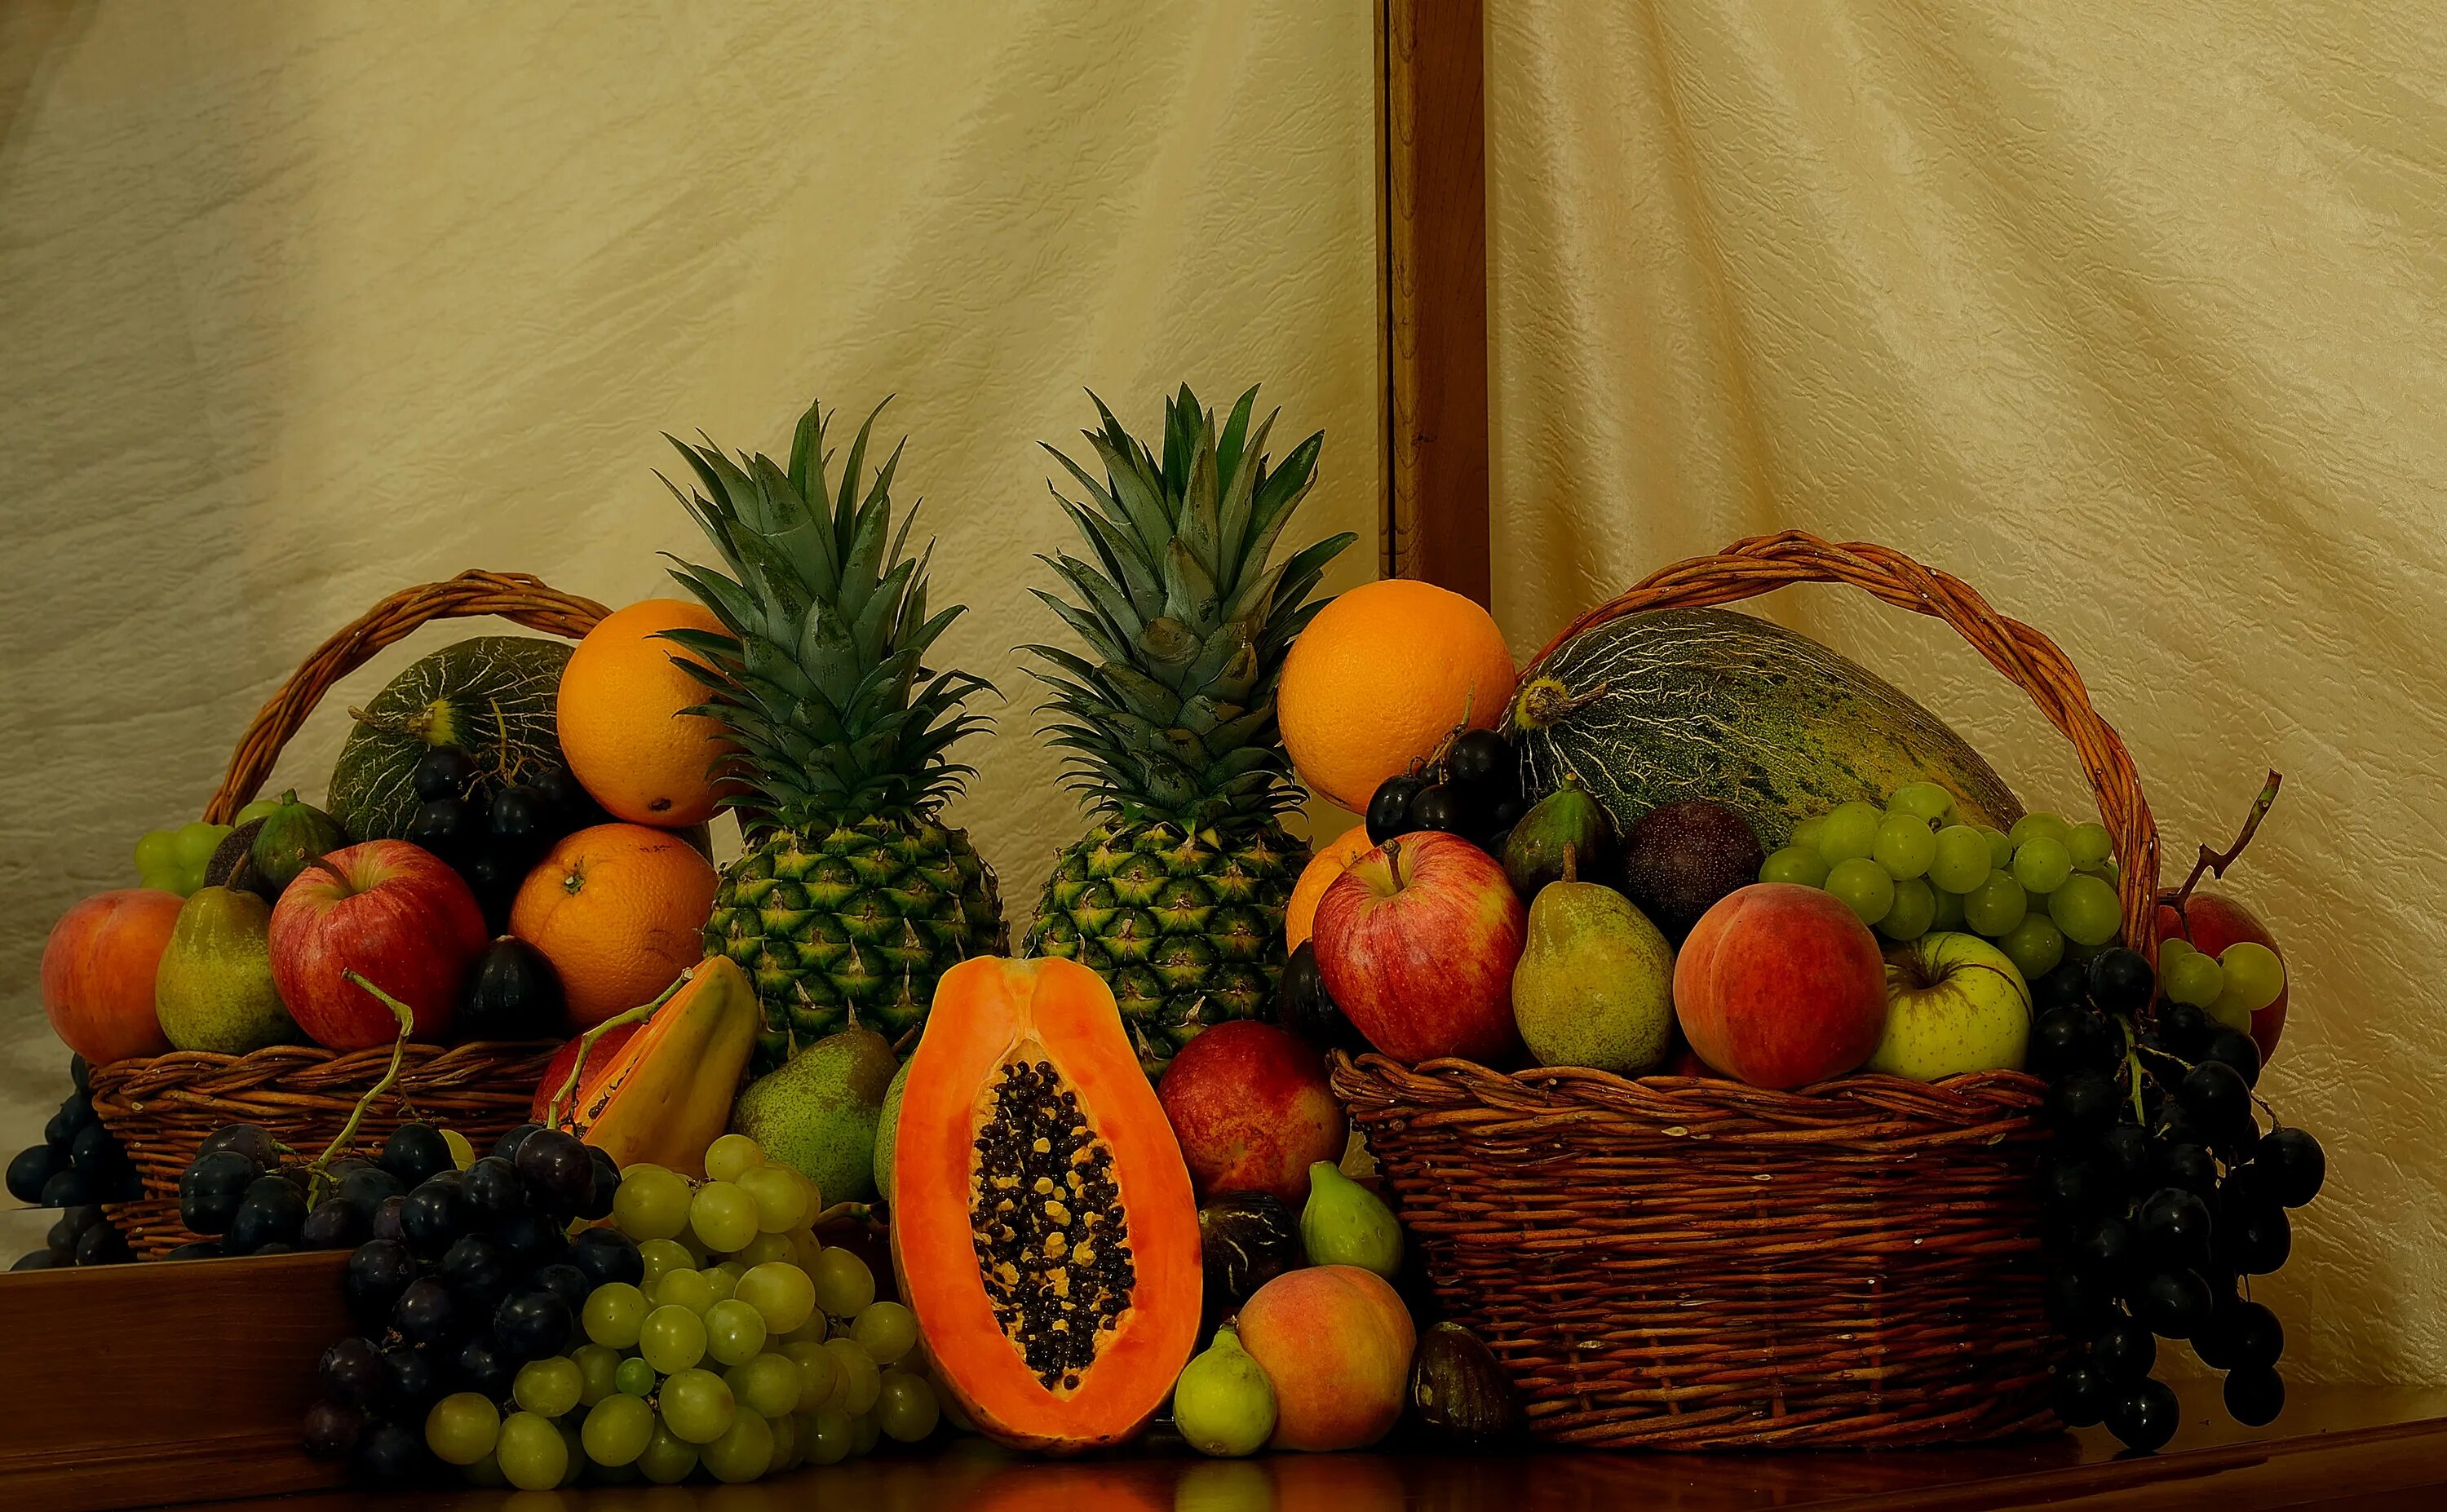 2 6 всех фруктов составляют персики. Фрукты. Фрукты на столе. Корзина с овощами и фруктами. Корзина фруктов на столе.